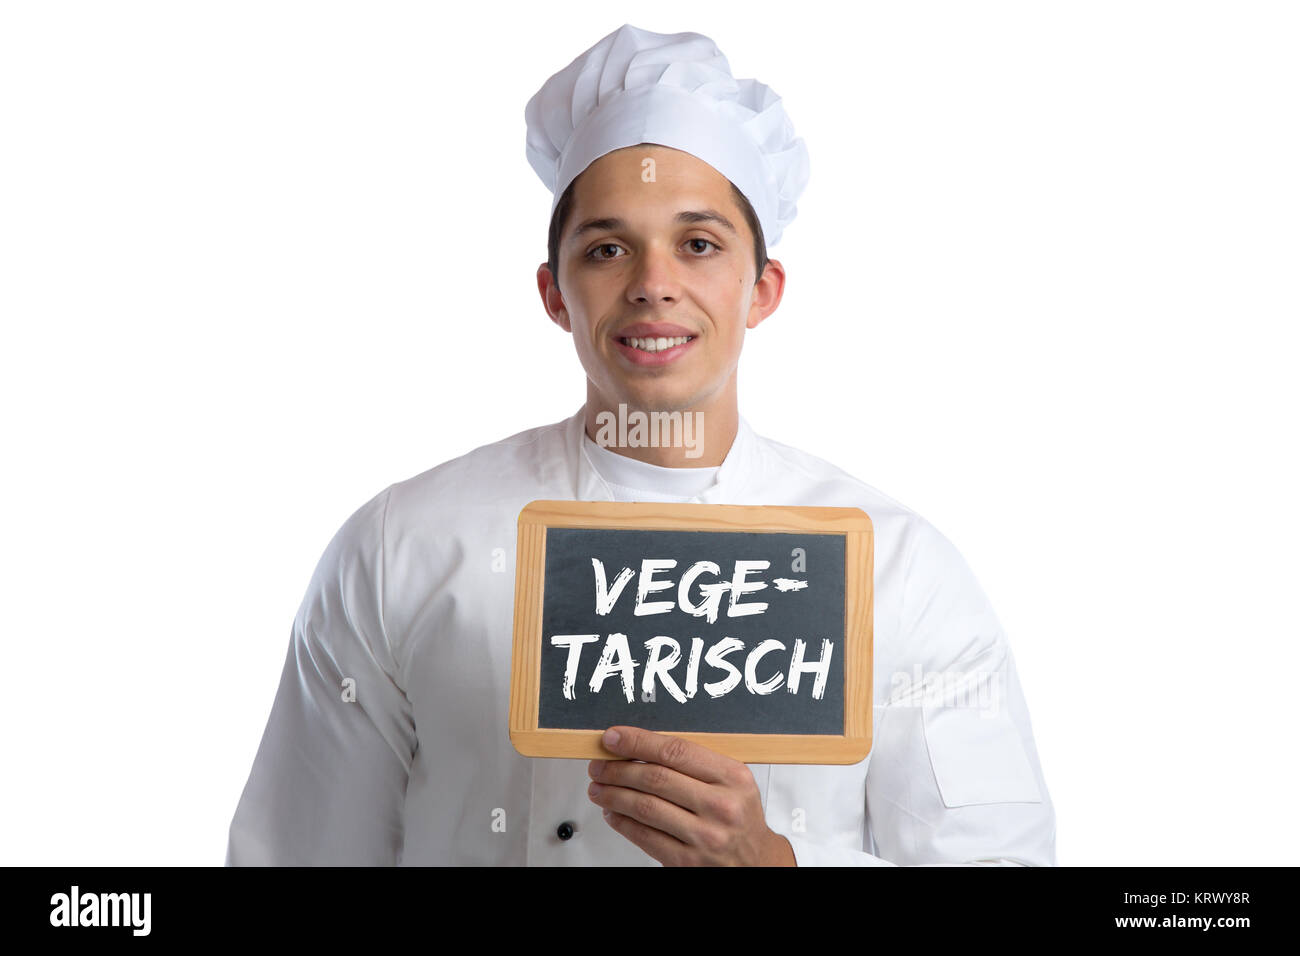 Vegetarisch Essen Food Koch kochen gesunde Ernährung Gemüse Tafel Schild  Freisteller freigestellt vor einem weissen Hintergrund Stock Photo - Alamy